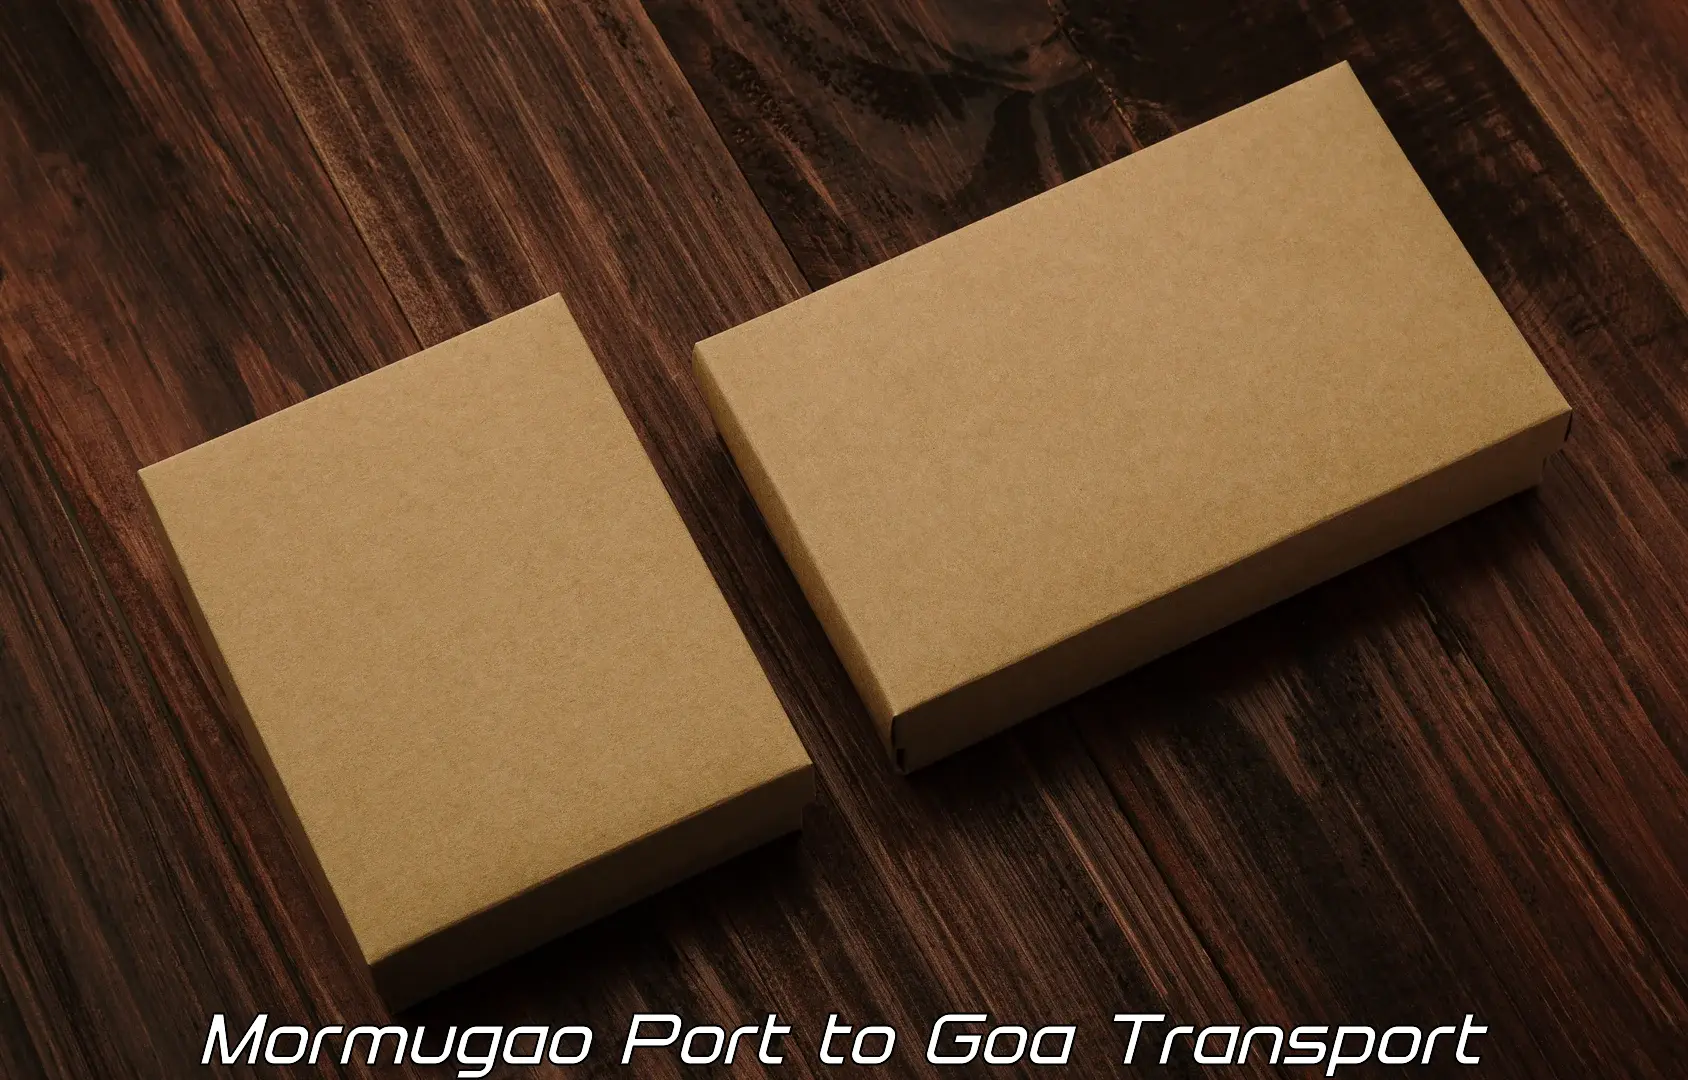 Container transportation services Mormugao Port to Goa University